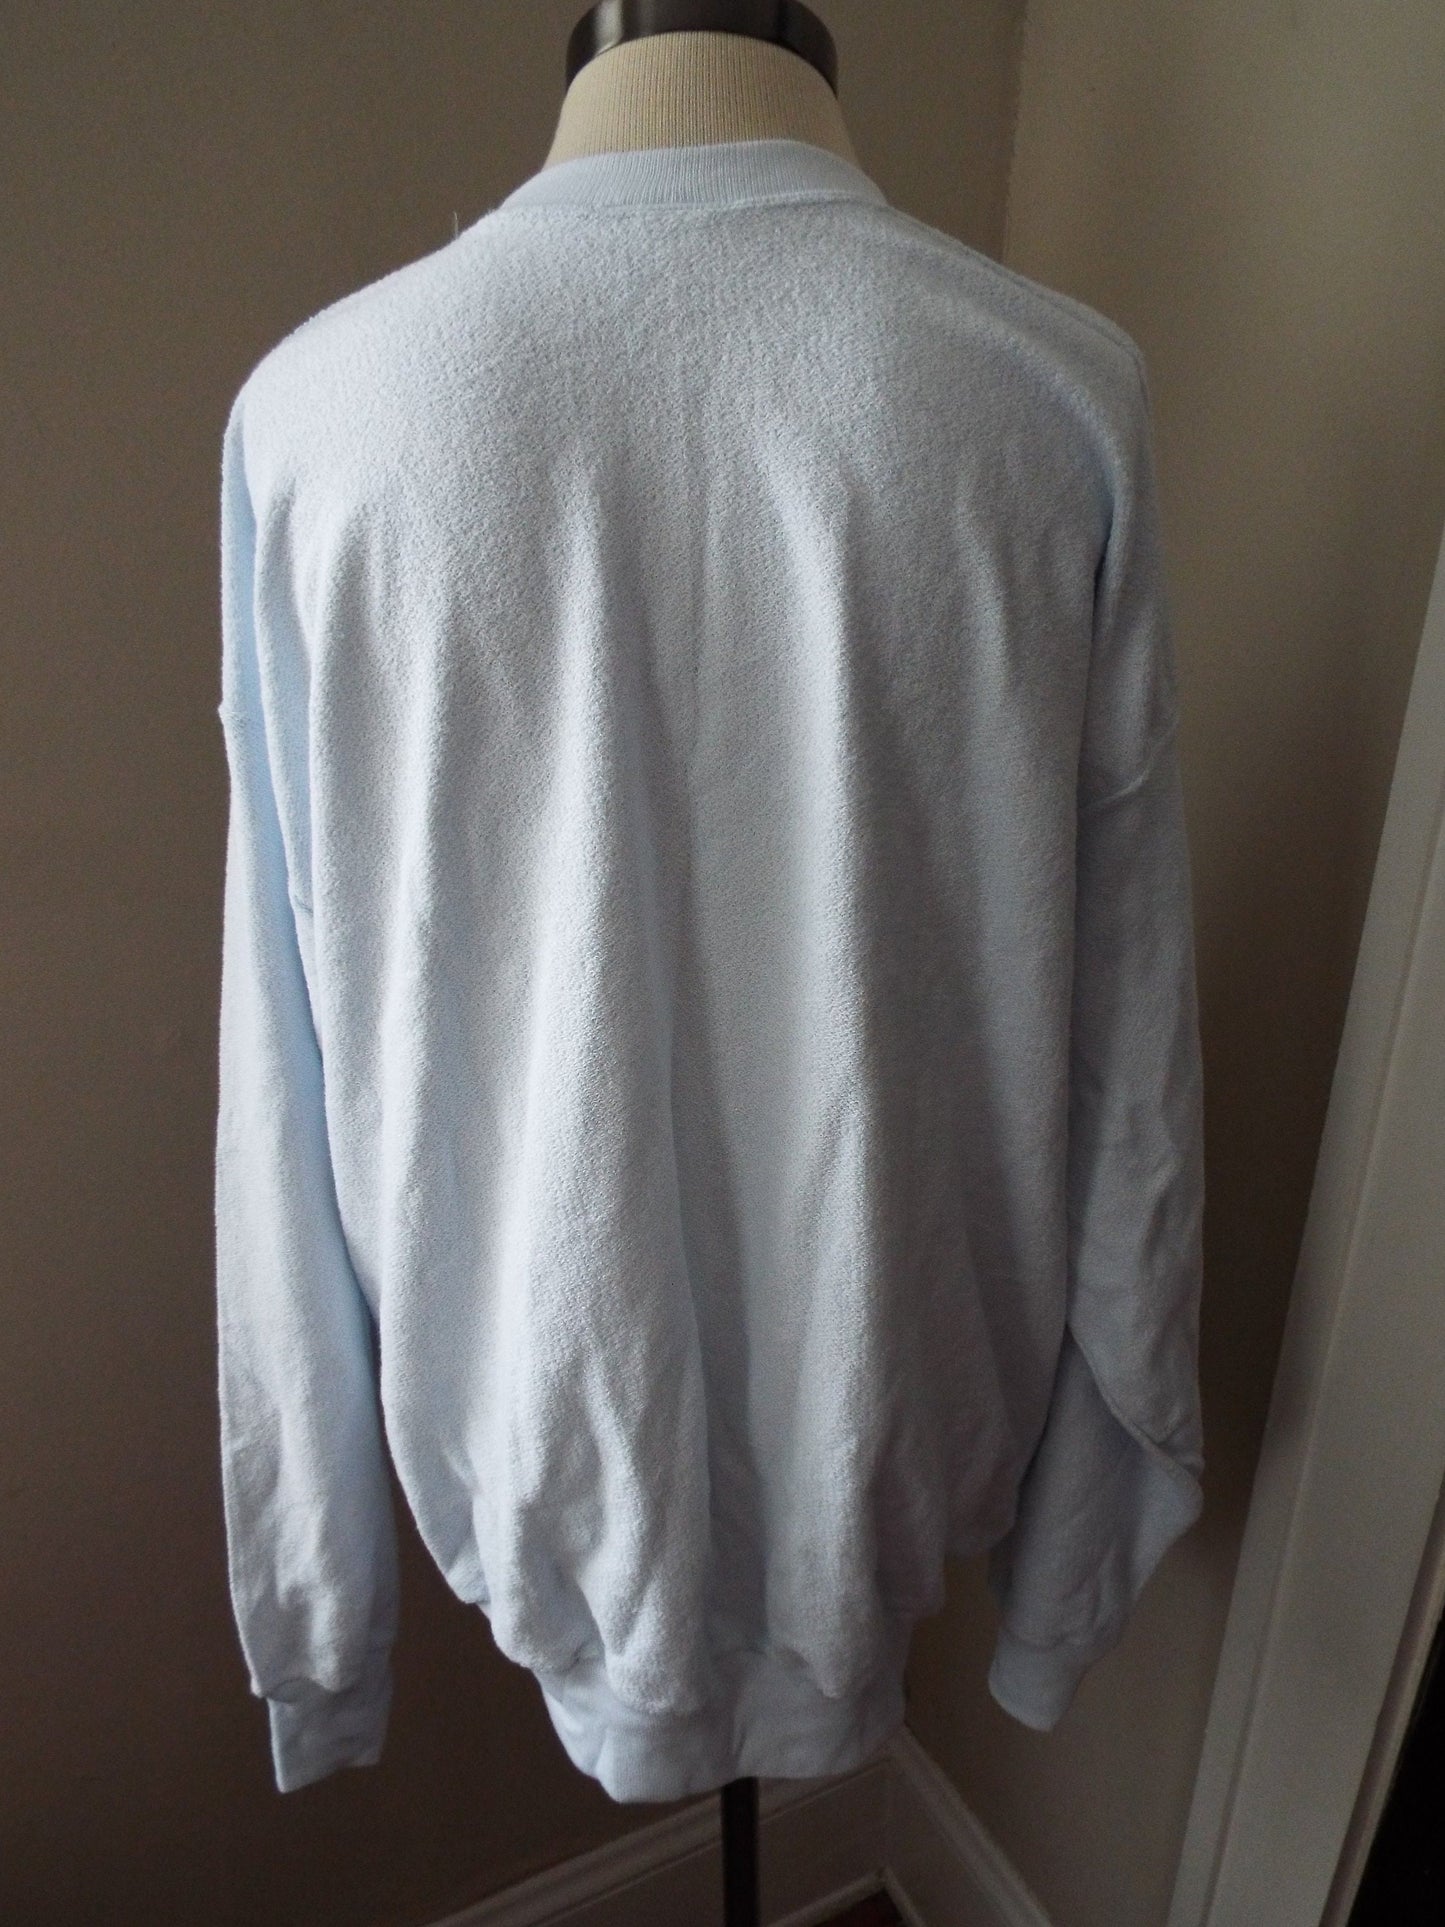 Vintage Sweatshirt by Cheek-O Sportswear